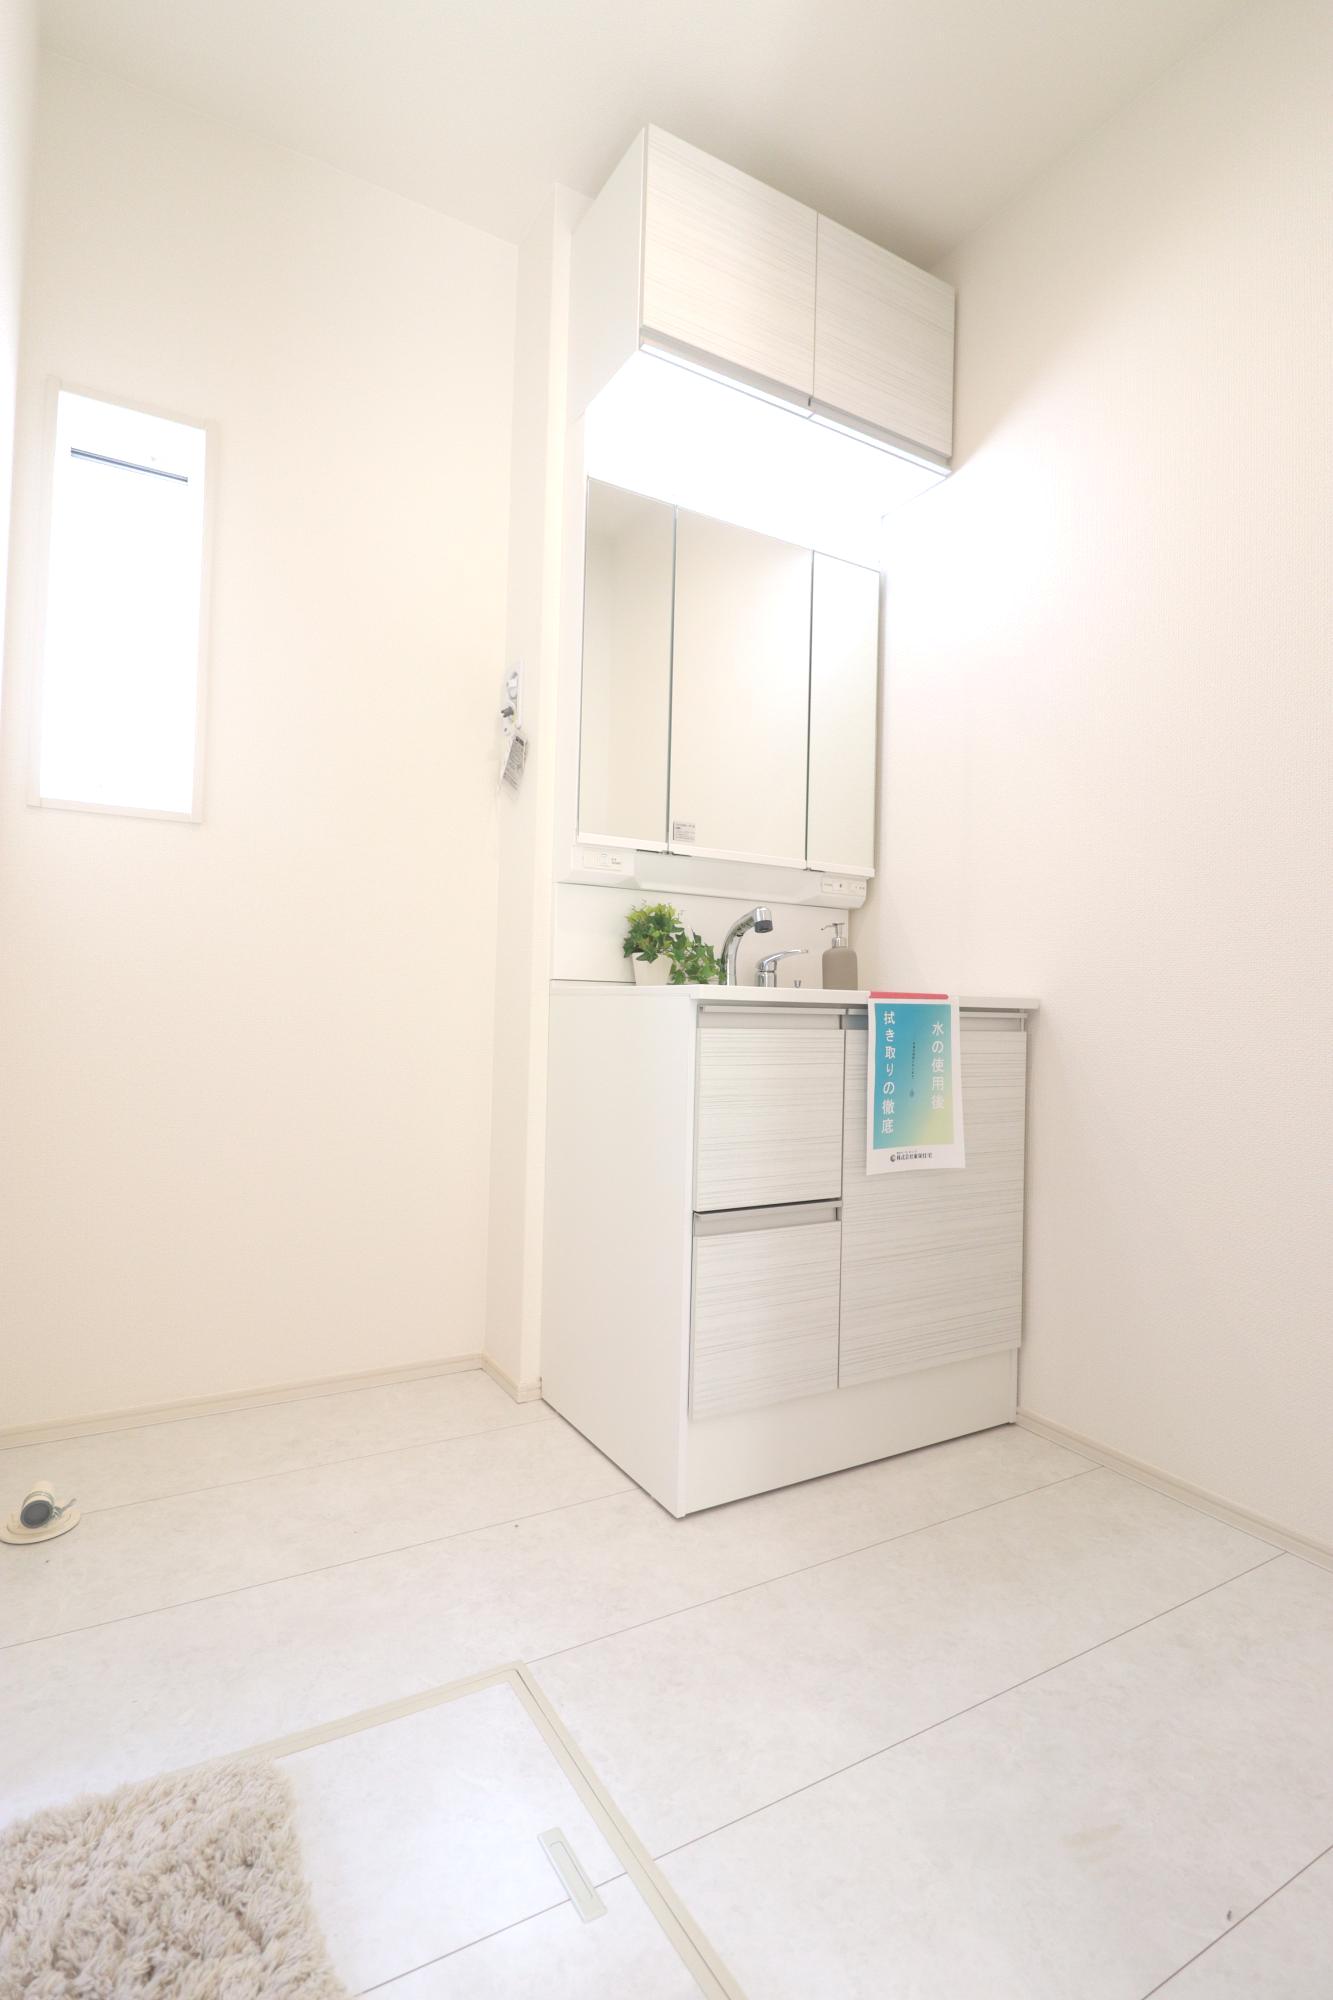 【3号棟】収納力と機能性に優れたシャワー付き洗面化粧台! 鏡の内側にも収納スペースがあるので、細かいものも整理しやすいです。